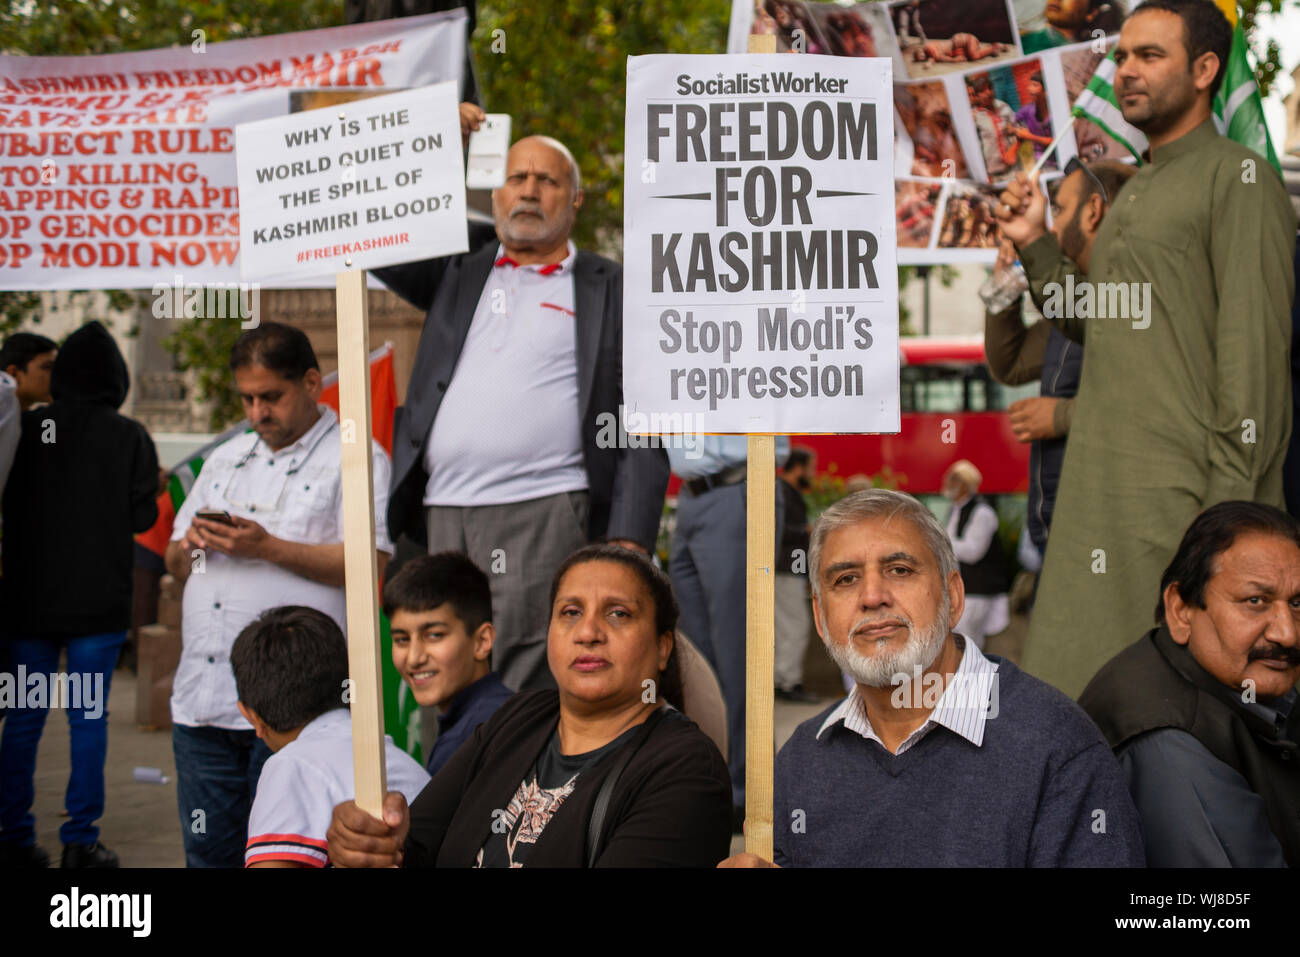 Se está llevando a cabo una protesta en Westminster, Londres, Reino Unido protestando contra la ocupación india de Jammu y Cachemira, afirmando que miles de personas han sido asesinados y heridos por las fuerzas armadas indias. Artículo 370 El 5 de agosto, por el que se protegen los derechos de la población de la zona, fue revocado por el gobierno del BJP Foto de stock